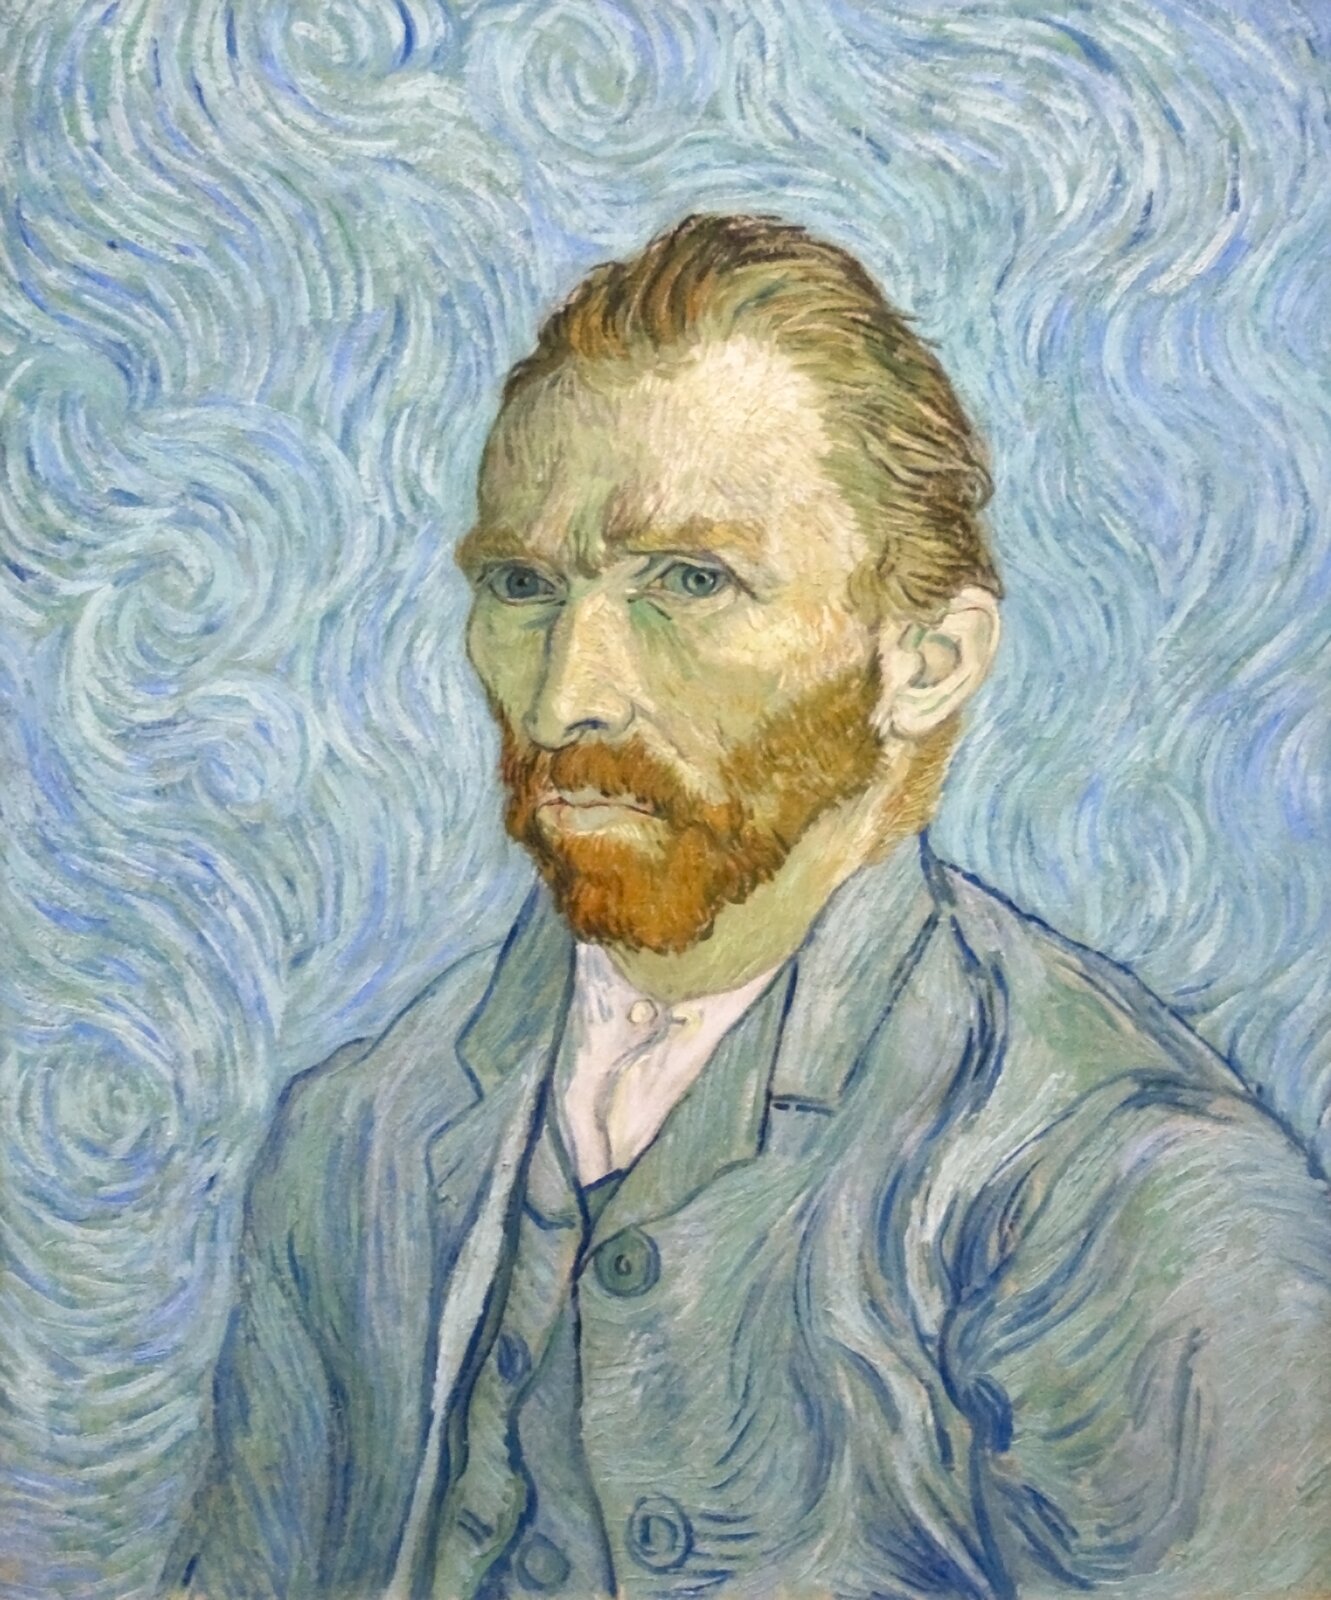 Obraz przedstawia autoportret Vincenta van Gogha. Mężczyzna ma krótkie, rude włosy zaczesane do tyłu. Widoczne są jego zakola. Ma rude, krzaczaste brwi, błękitne oczy, duży i lekko krzywy nos oraz krótką, rudą brodę. Ubrany jest w białą koszulę, błękitną kamizelkę oraz marynarkę. Mężczyzna ukazany jest od ramion w górę. Jego tułów skierowany jest w lewą stronę obrazu, jednak wzrok skierowany jest wprost na odbiorcę. Tło jest błękitno‑białe.